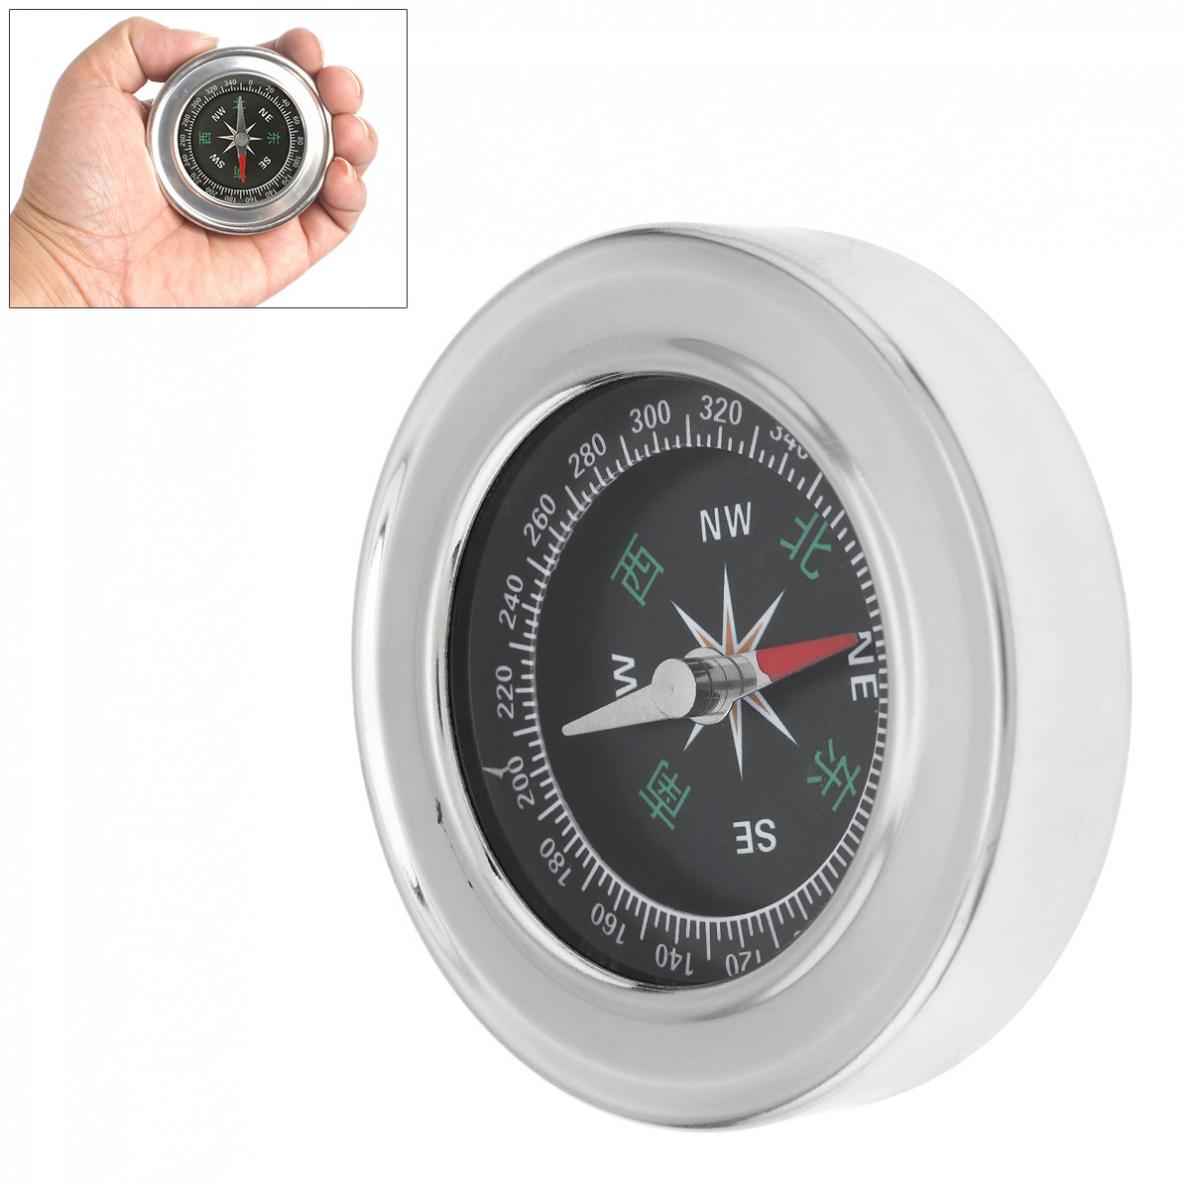 60 Mm Diameter Roestvrij Staal Metal Lichtgewicht Draagbare Kompas Voor Zowel Outdoor En Thuis Stevig En Duurzaam